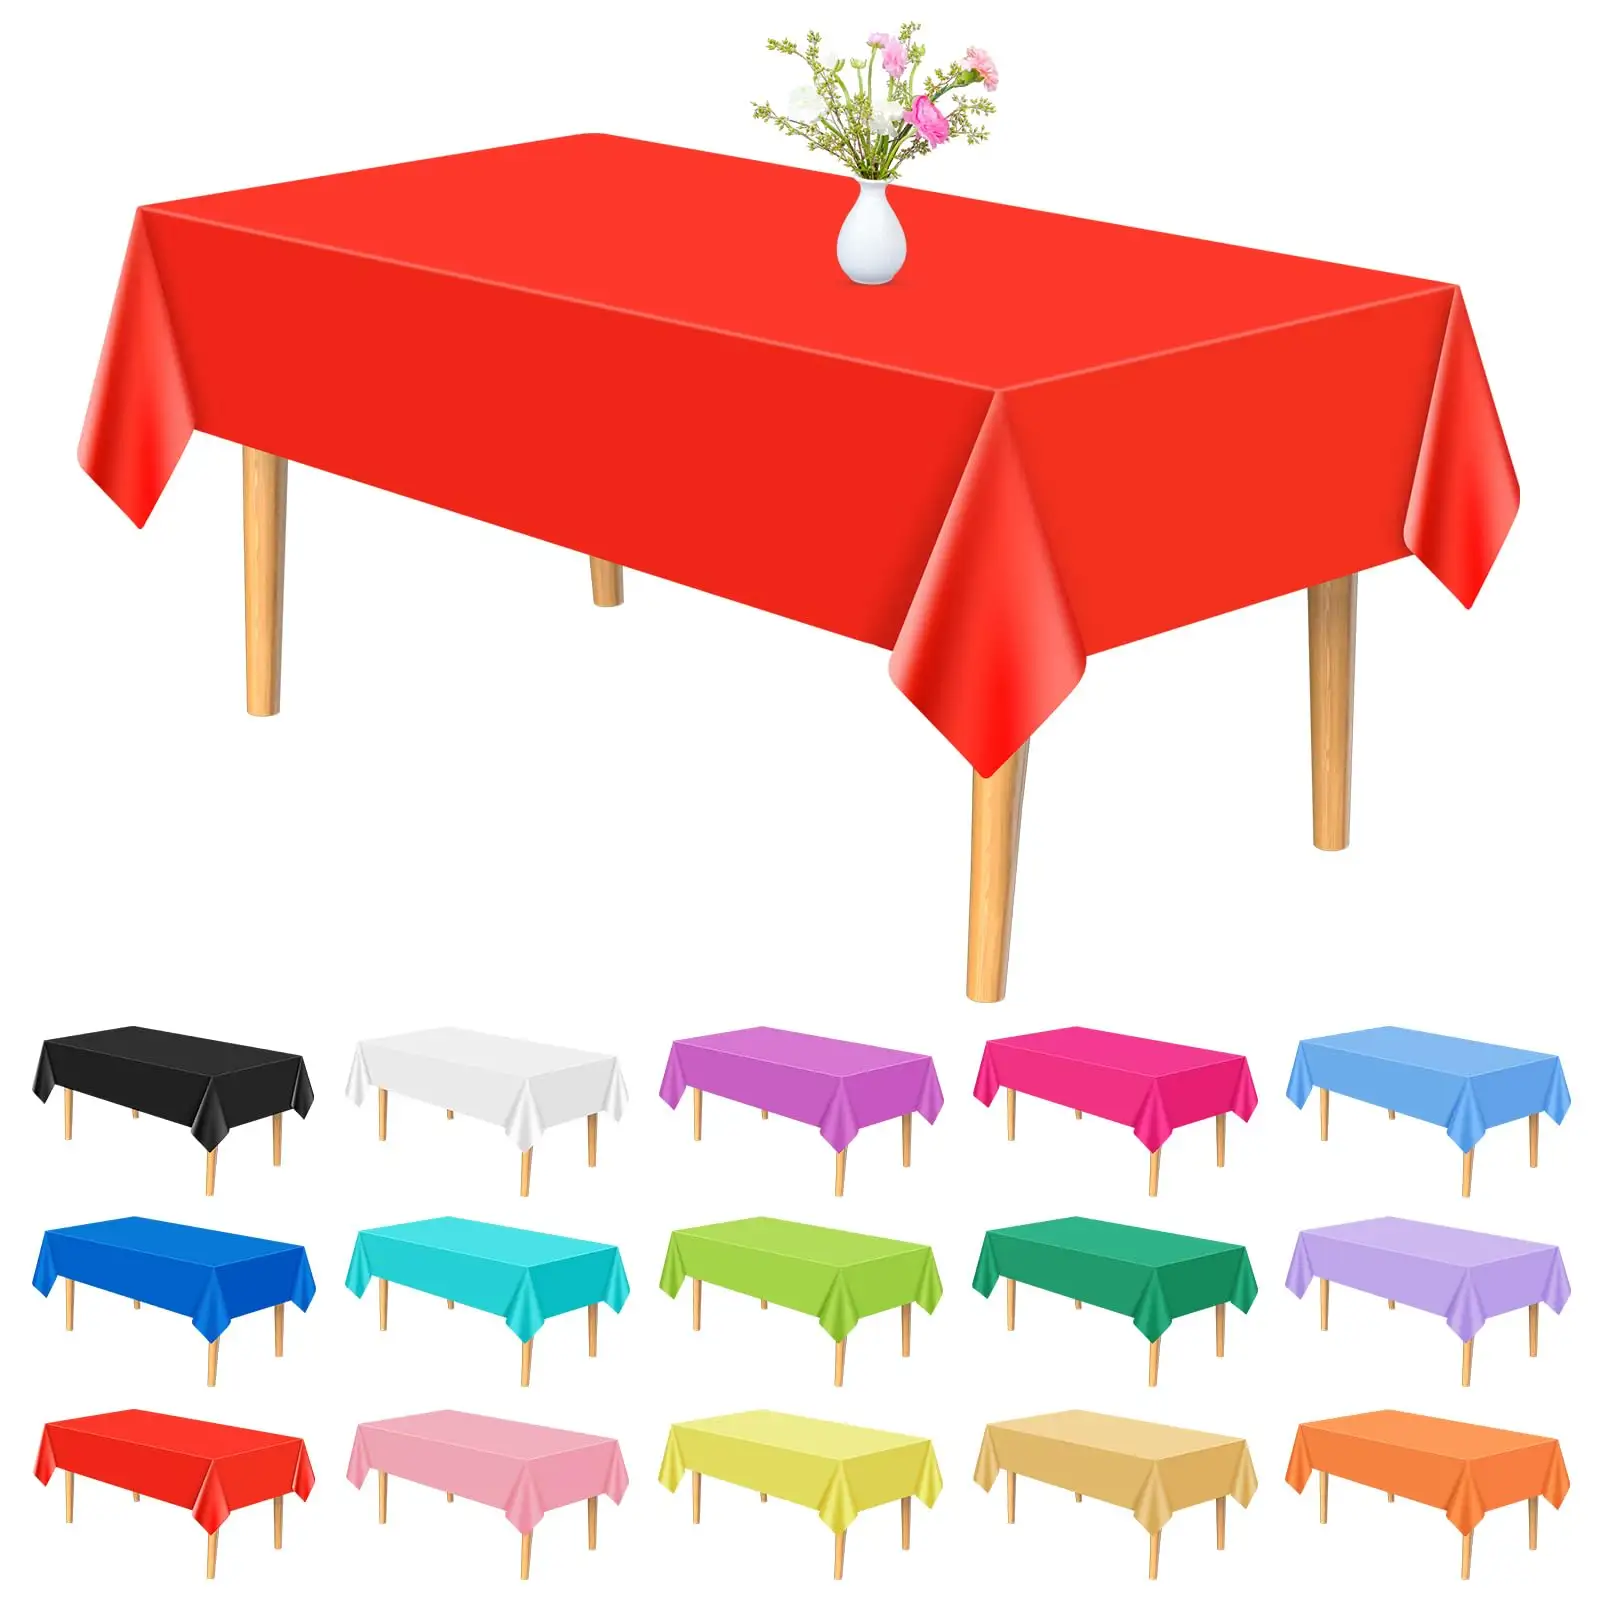 Taplak meja plastik multiwarna taplak meja piknik persegi panjang untuk Pancuran bayi pesta pernikahan ulang tahun Natal Makan dapur rumah